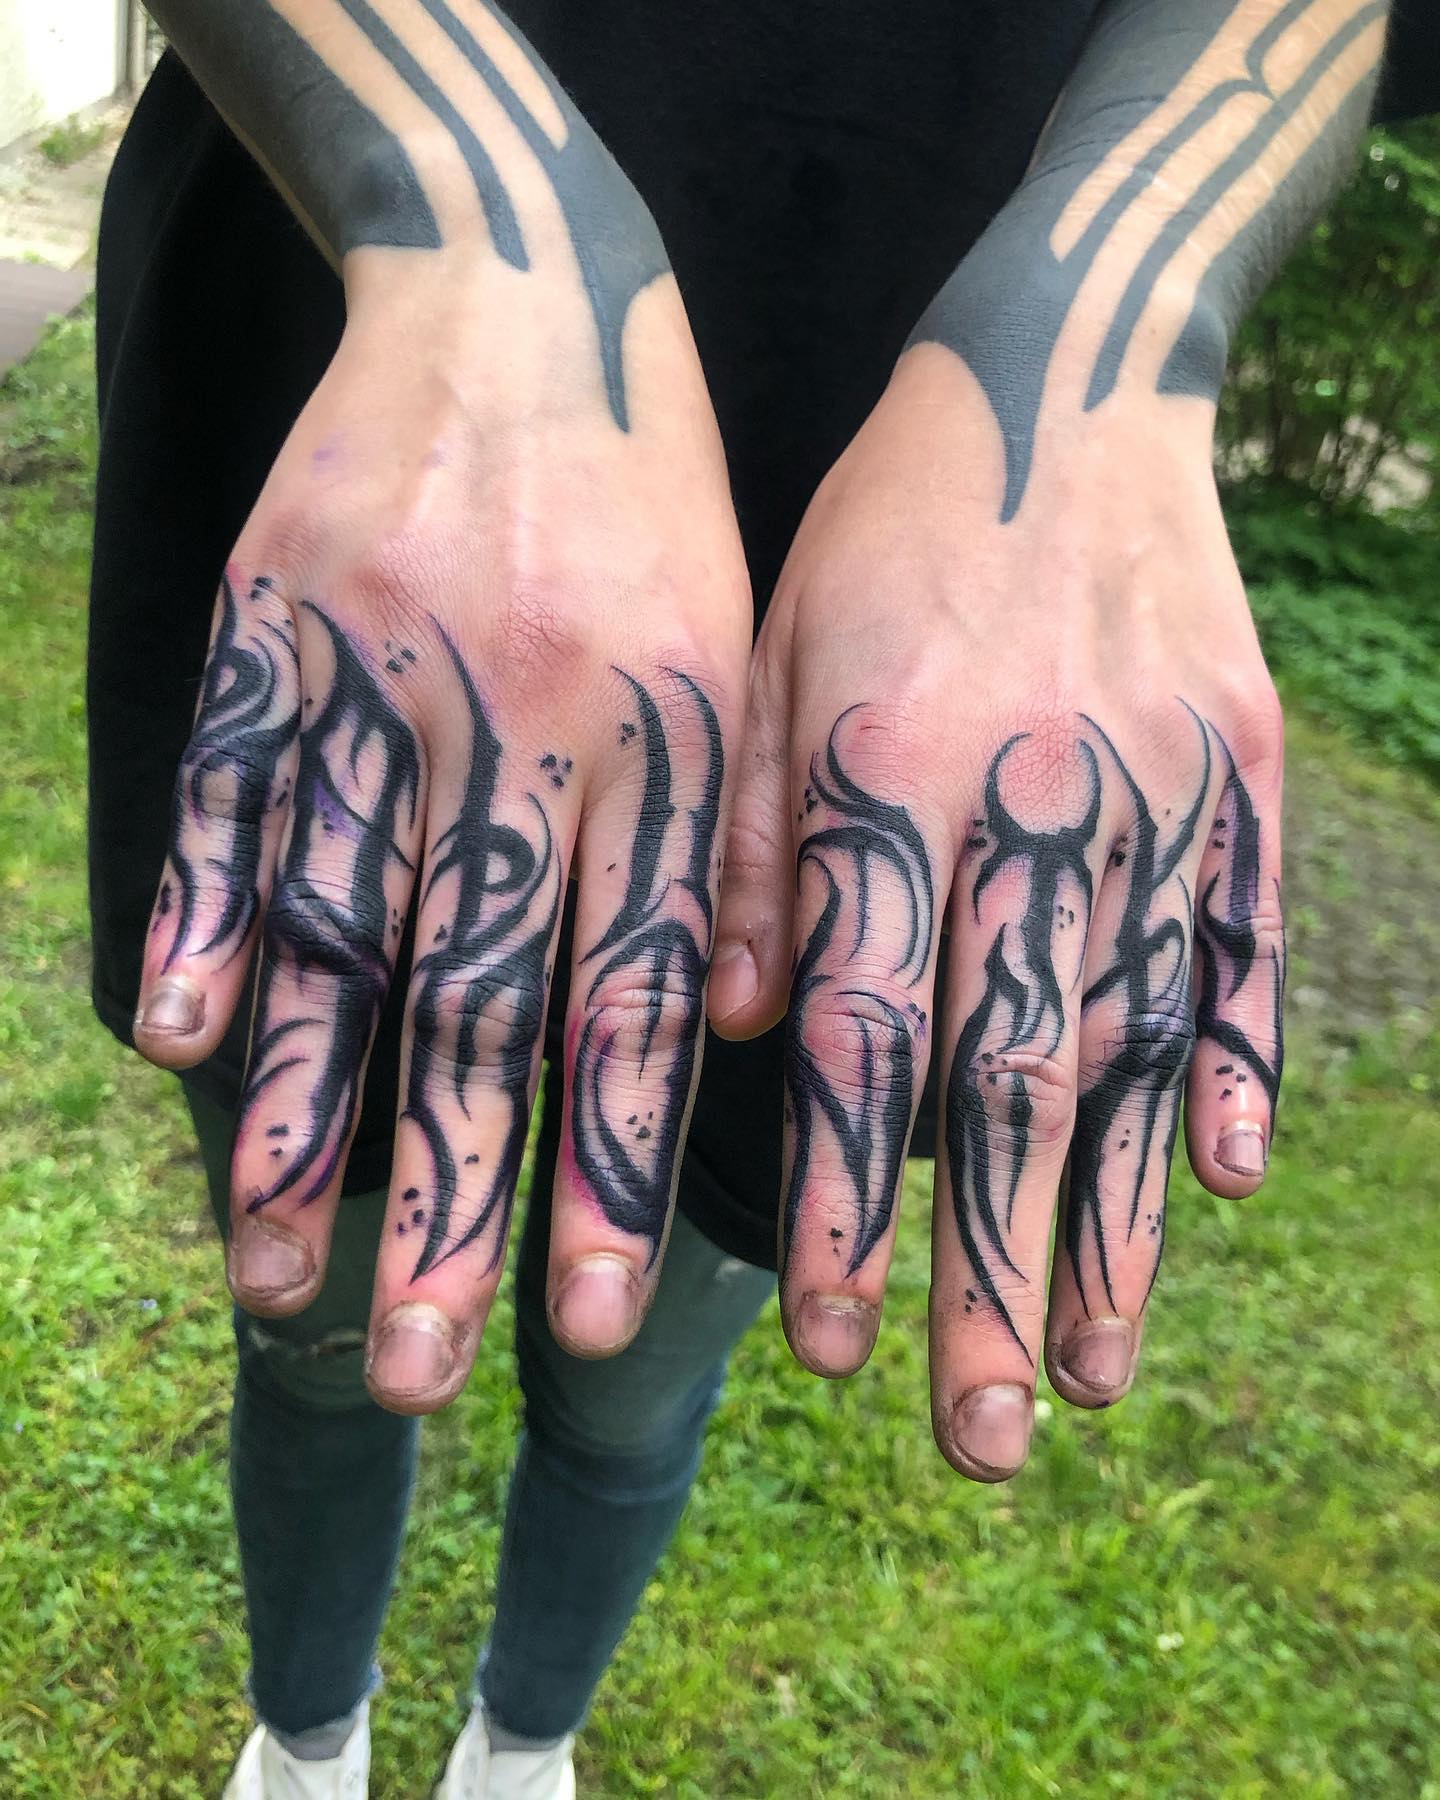 10 Best Hand Tattoos for Men 2022  Full Hand and Finger Ideas